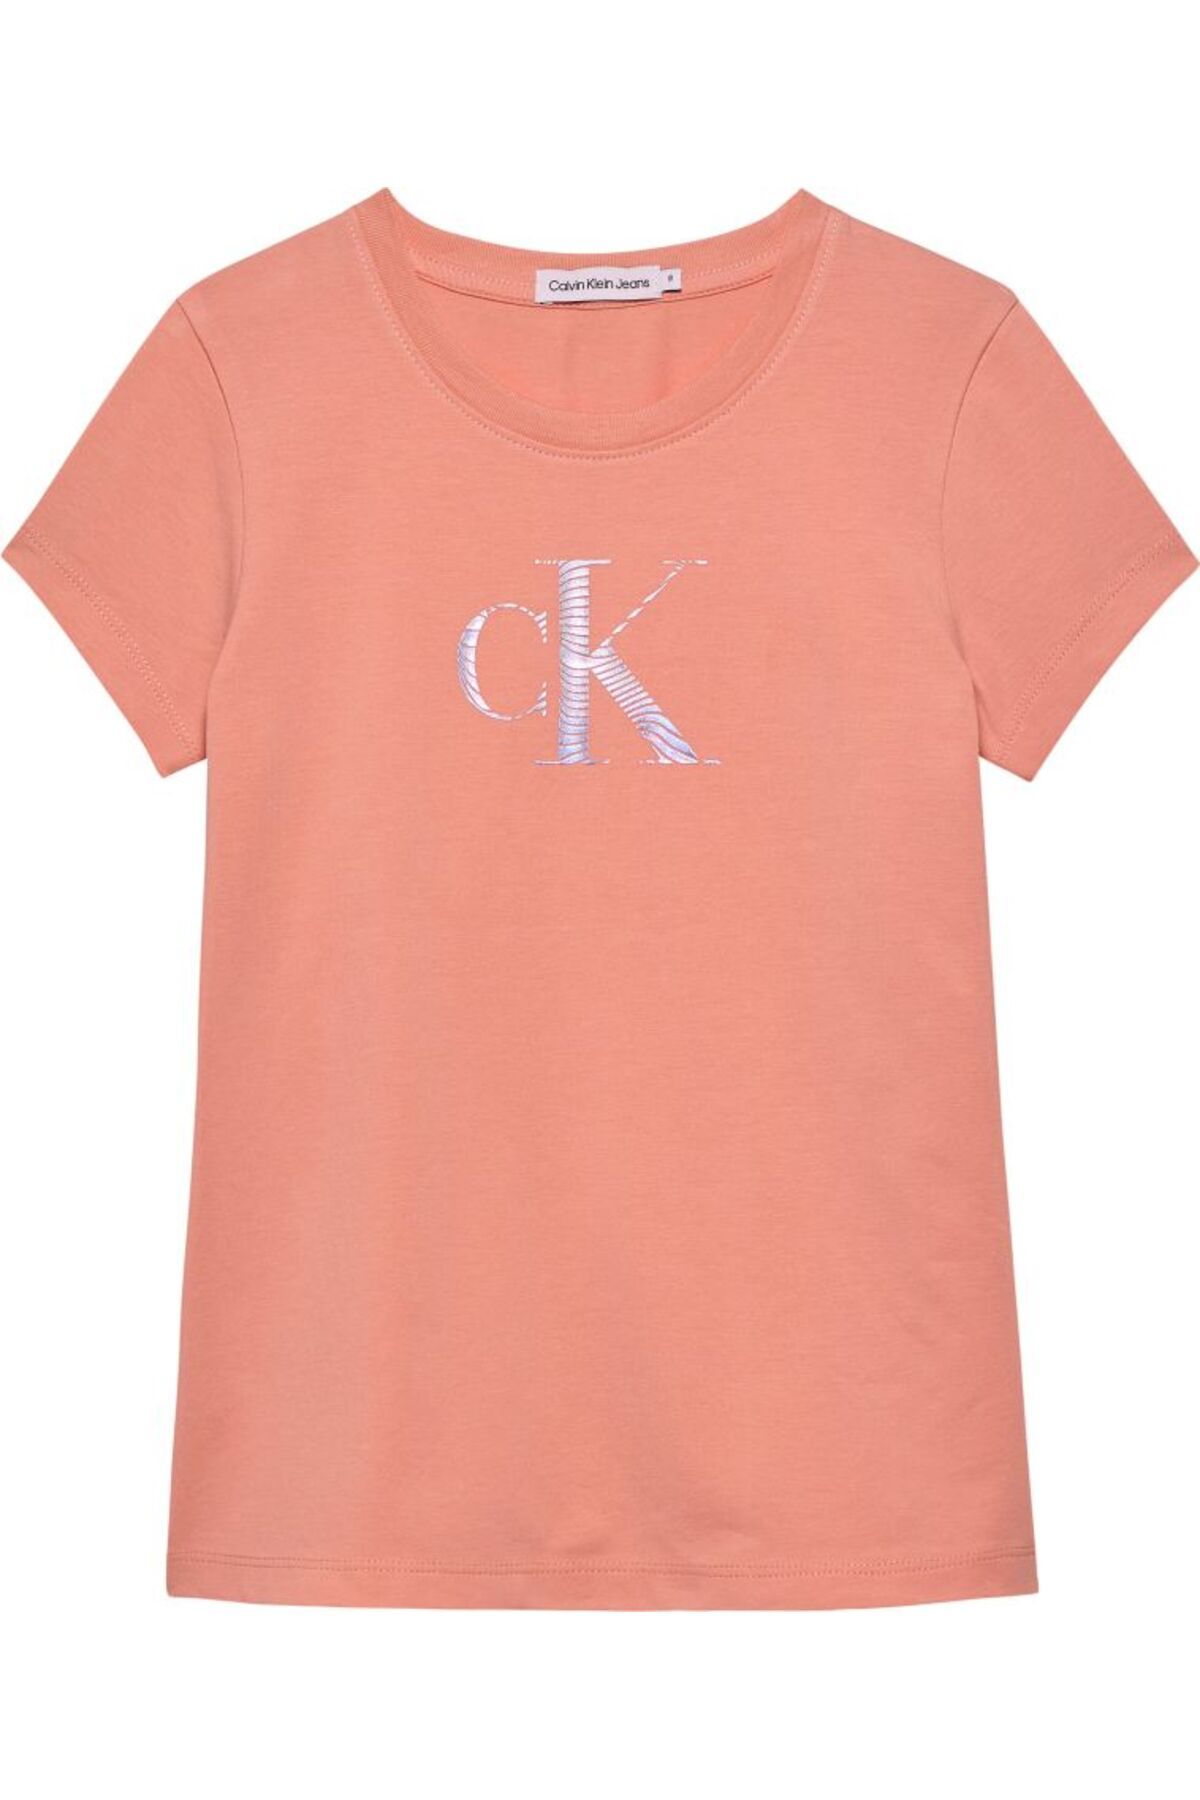 Calvin Klein Kız Çocuk Kısa Kollu T-shirt